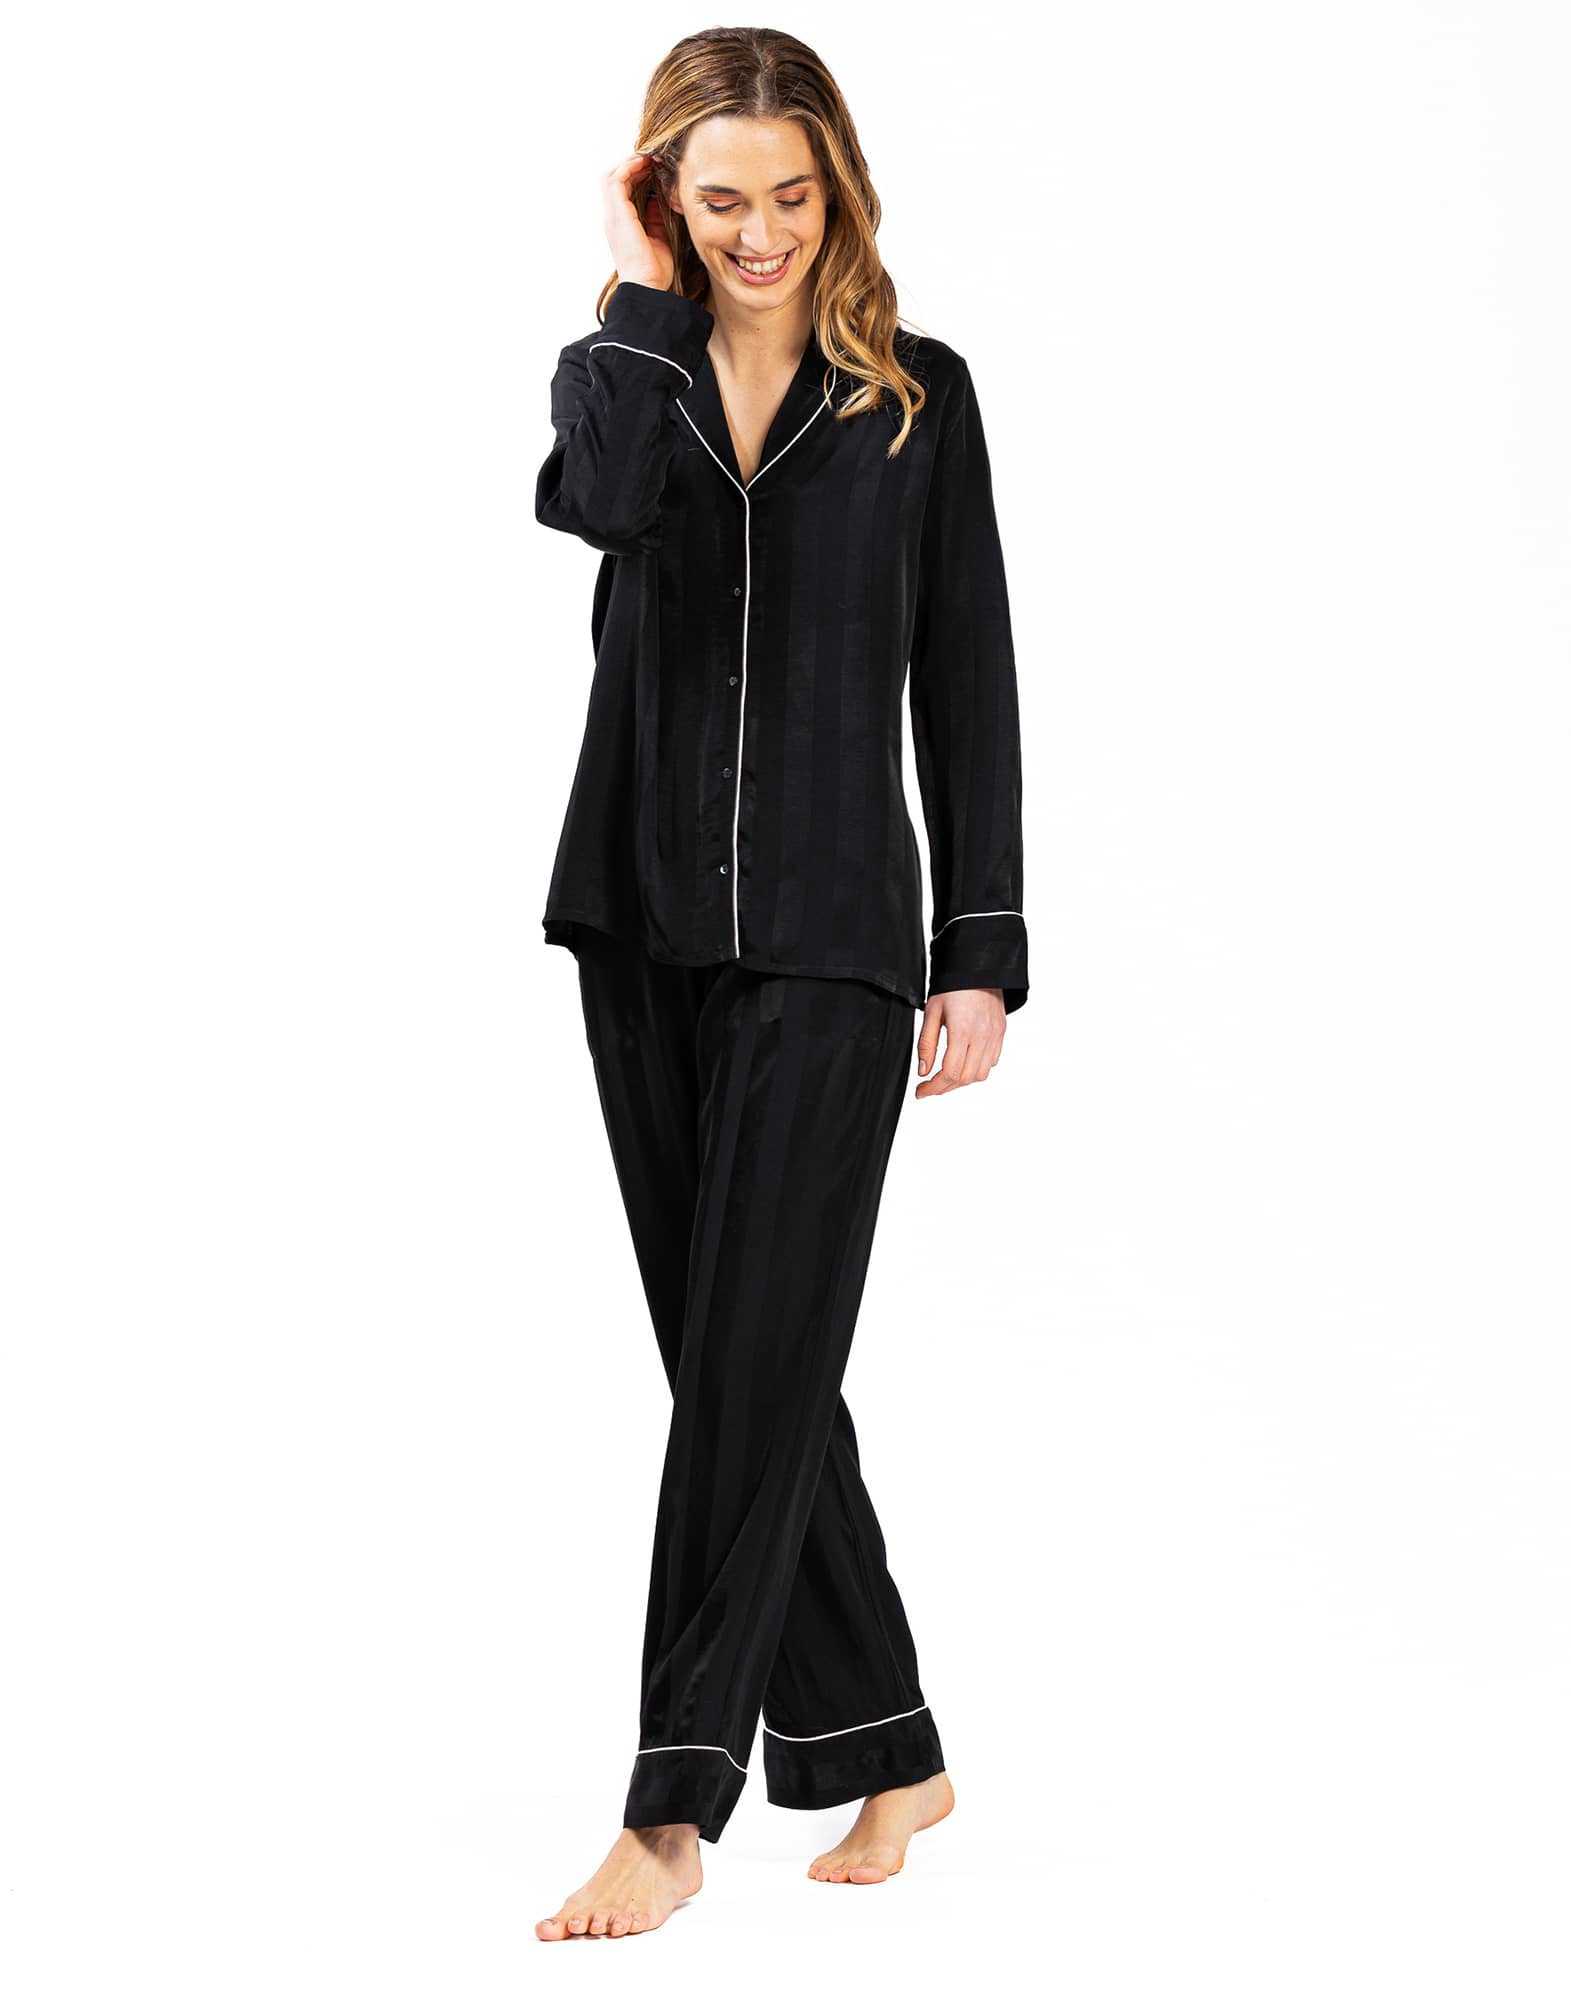 Pyjama boutonné chaine et trame  GABRIELLE 606 noir| Lingerie le Chat